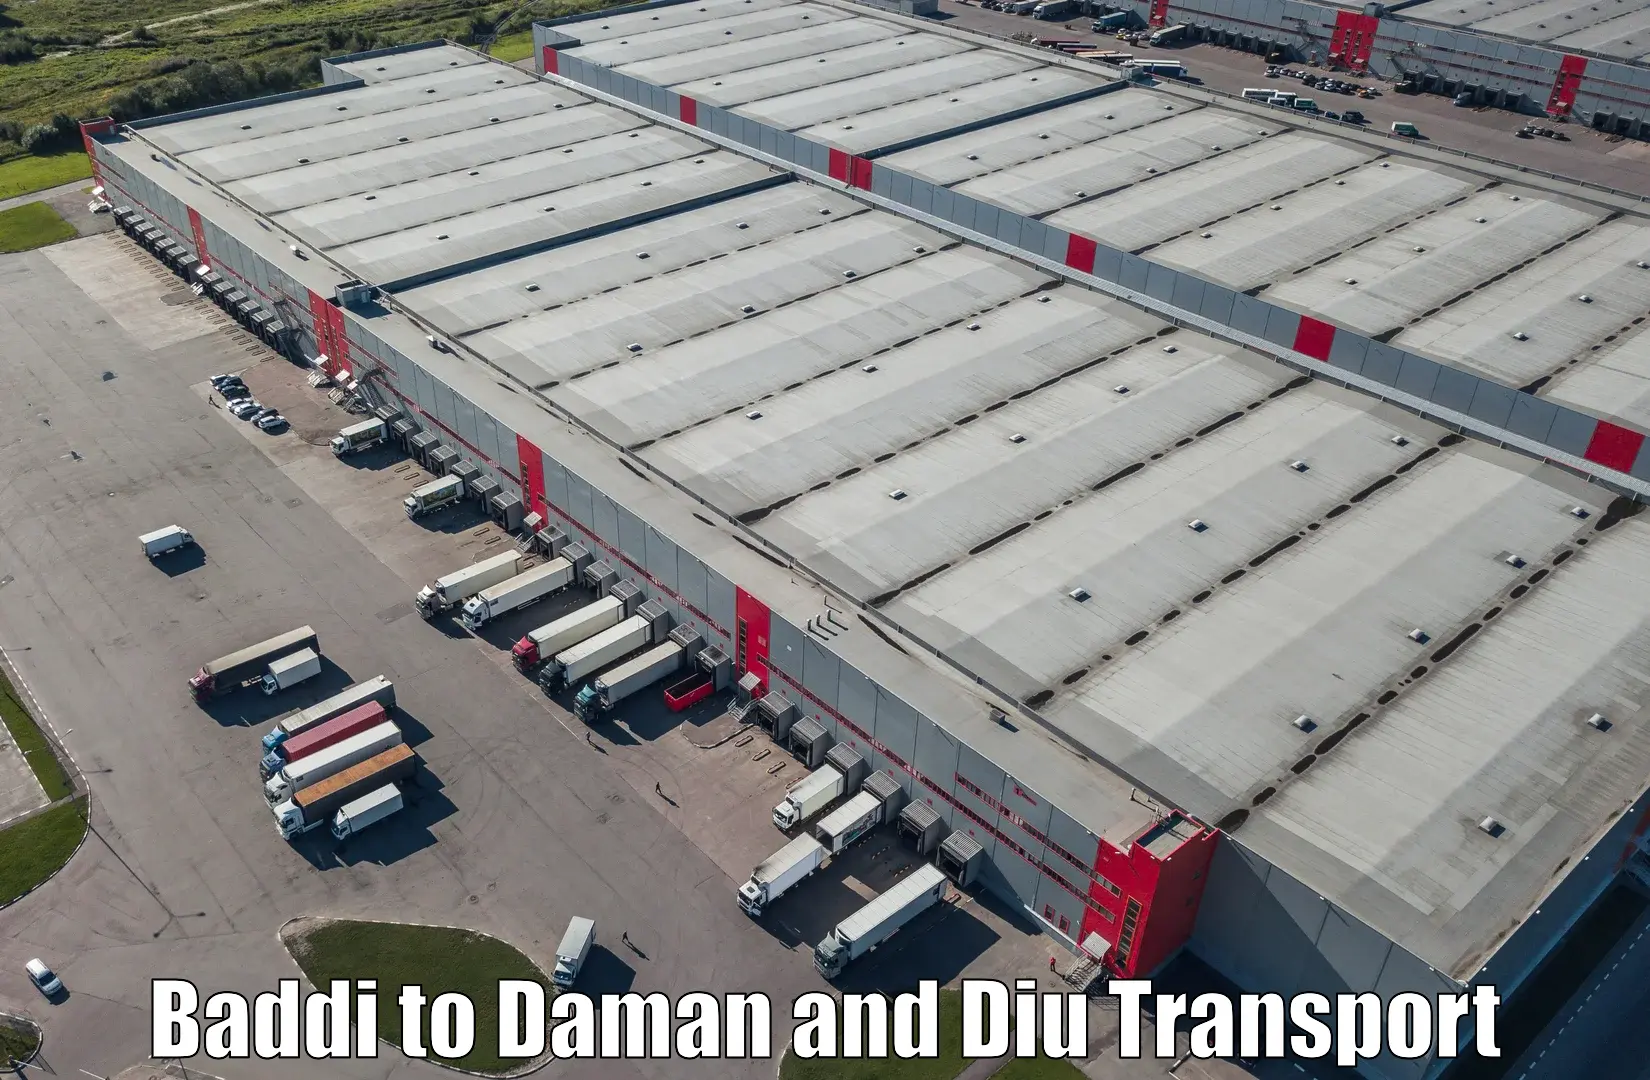 India truck logistics services Baddi to Diu